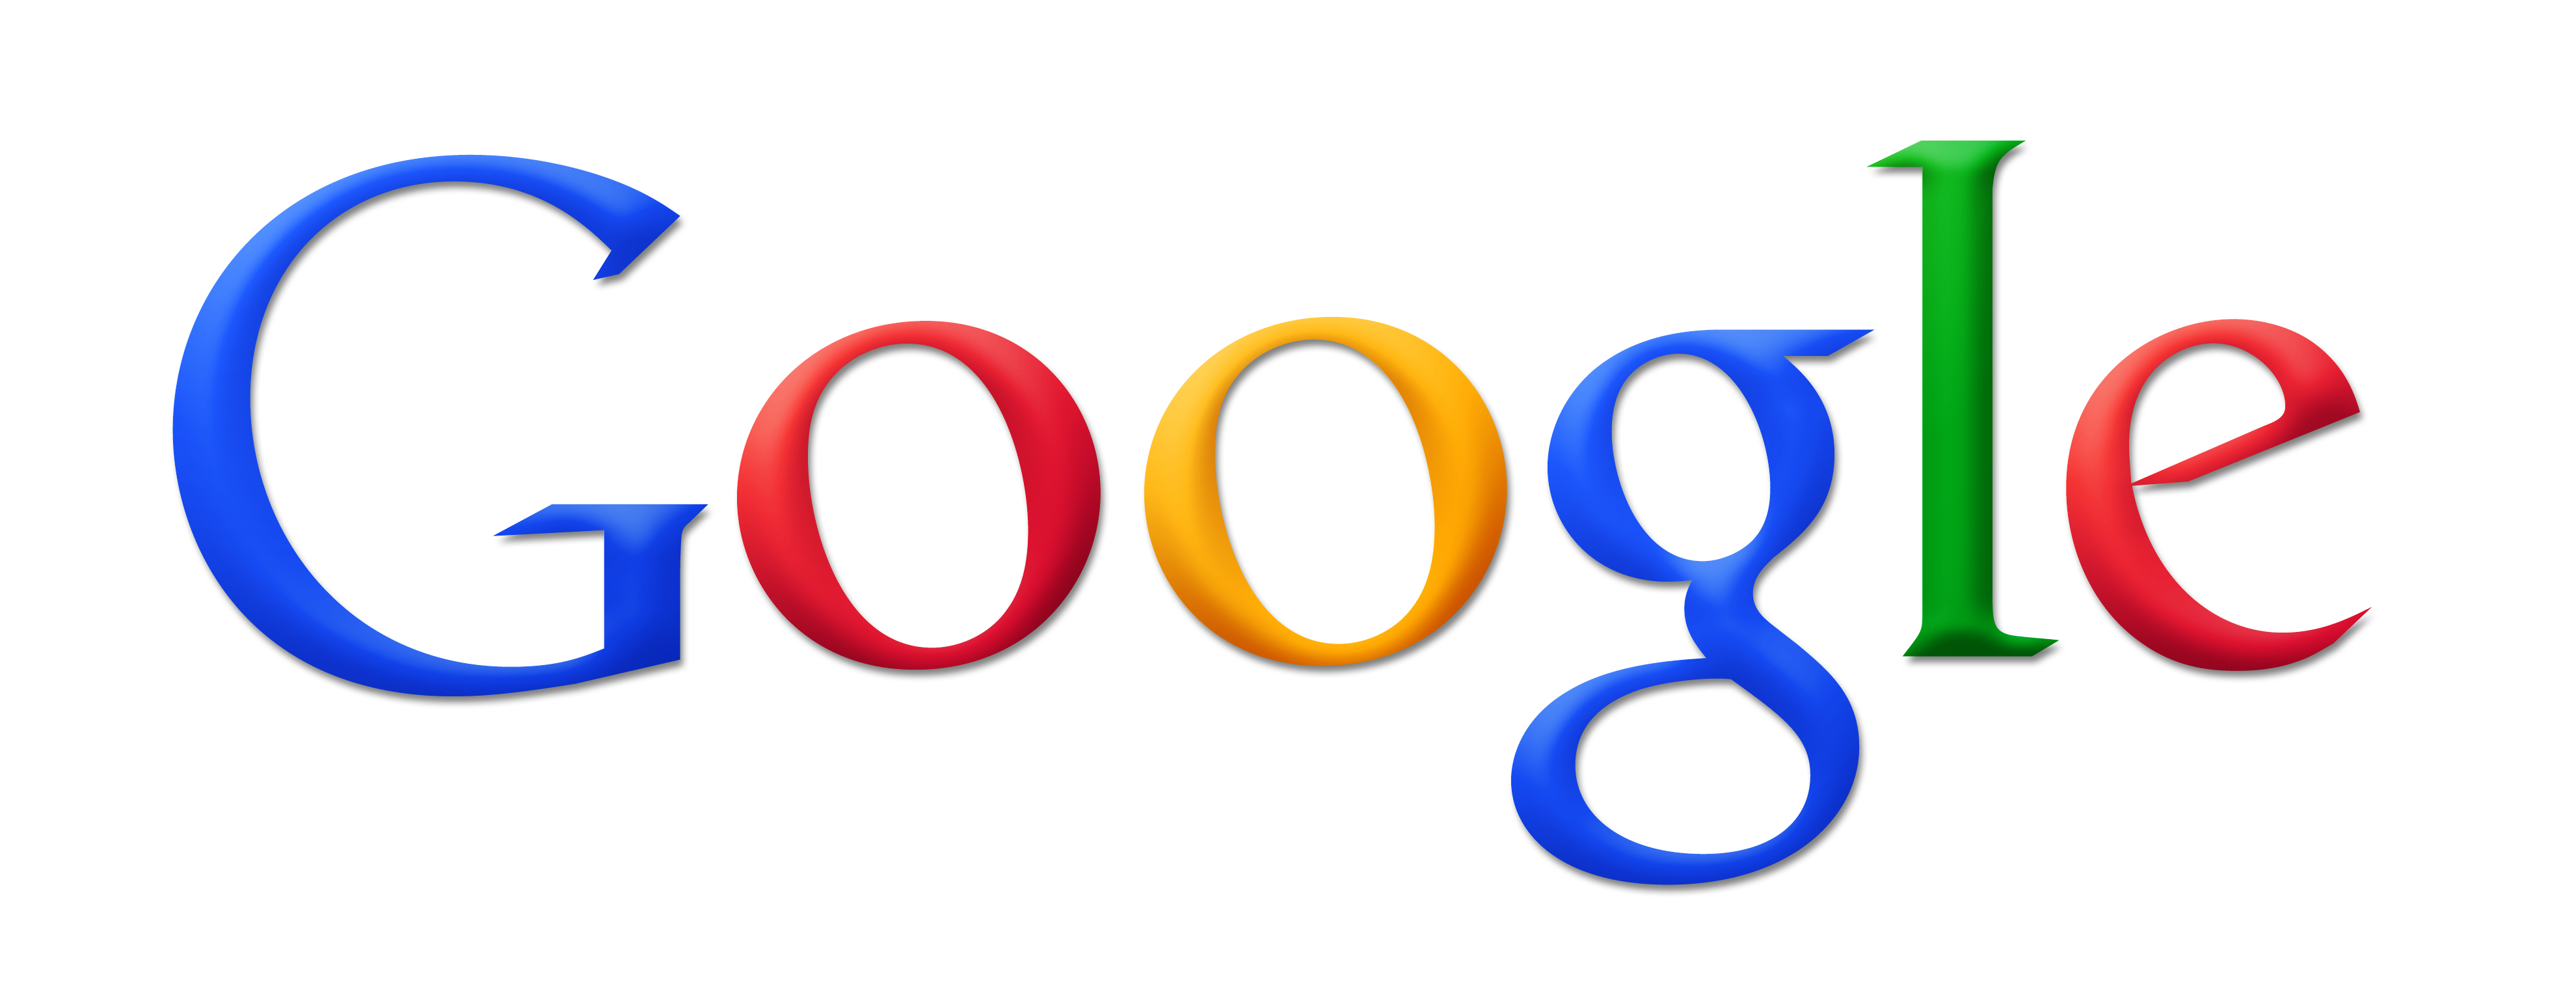 google logo vector 02